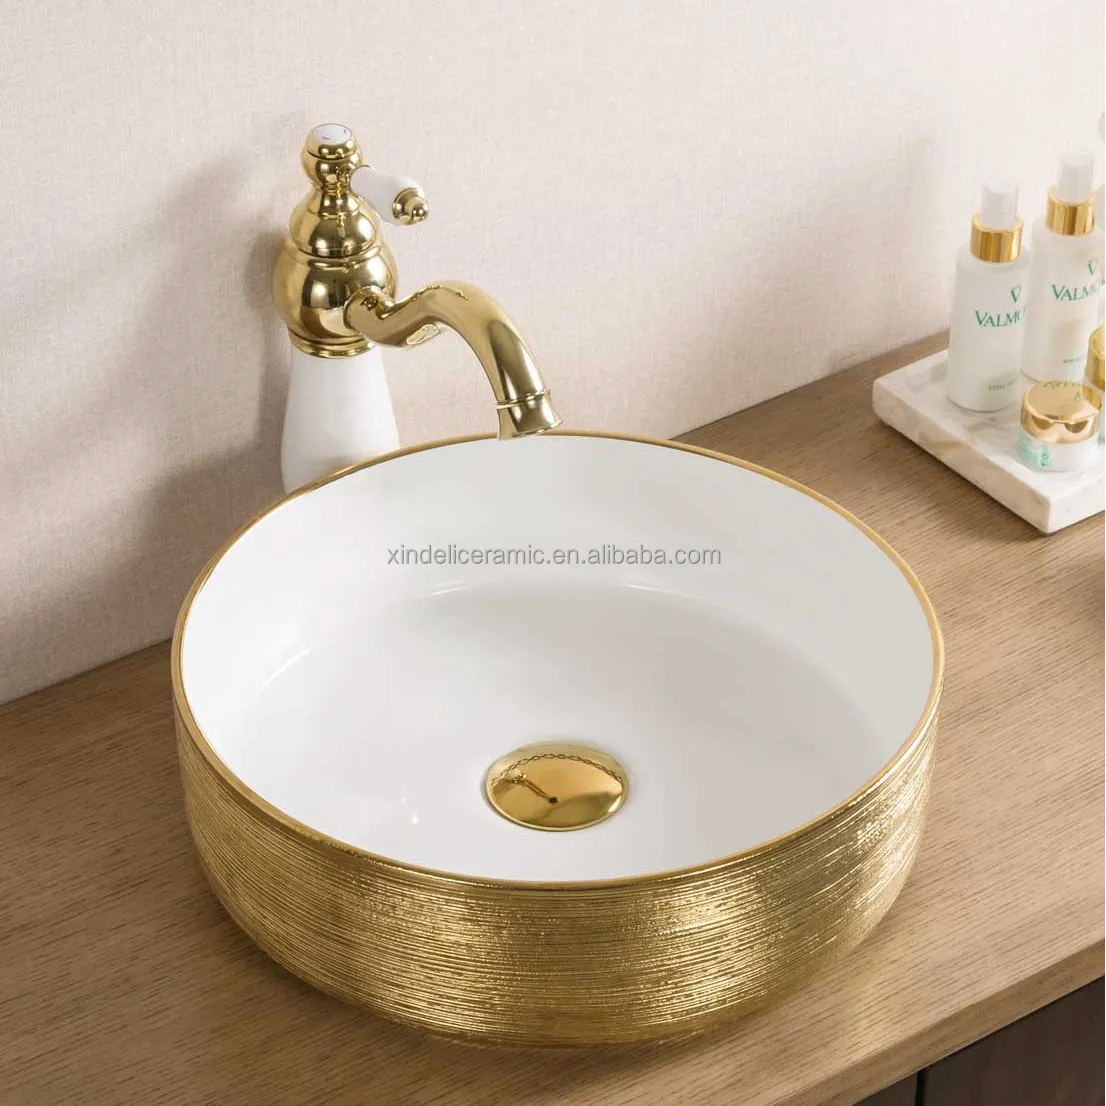 XDL-D357H130 bom design arte branco eletroplaca pia do banheiro ouro banheiro de cerâmica lavatório bacia